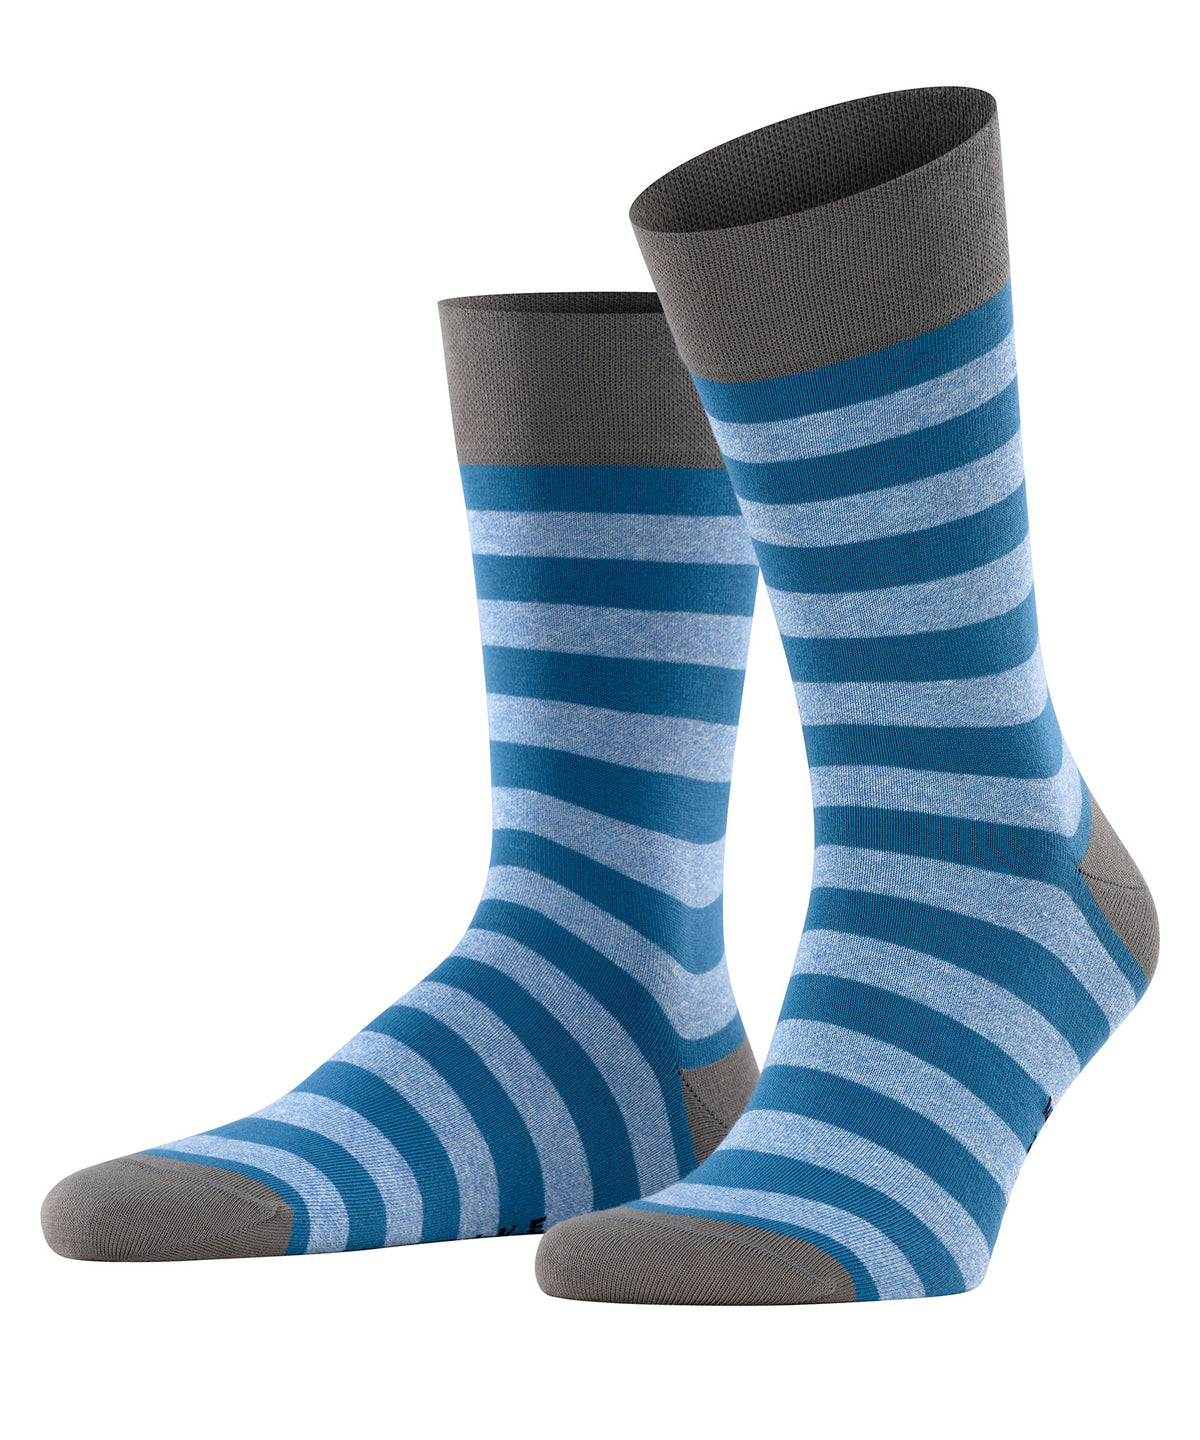 Falke Striped Socks, Men's Big & Tall